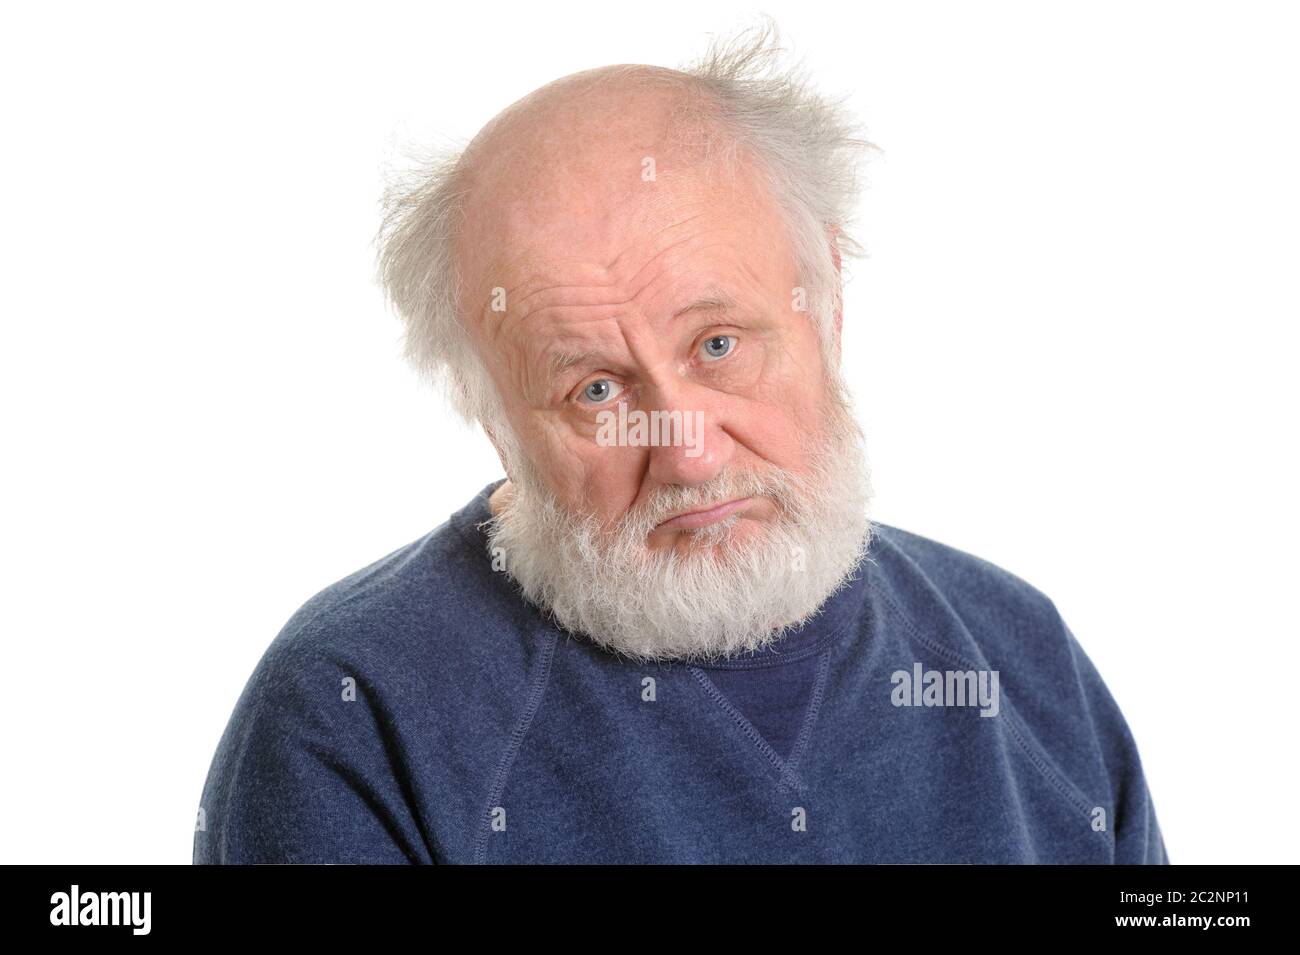 sad depressing old man isolated portrait Stock Photo